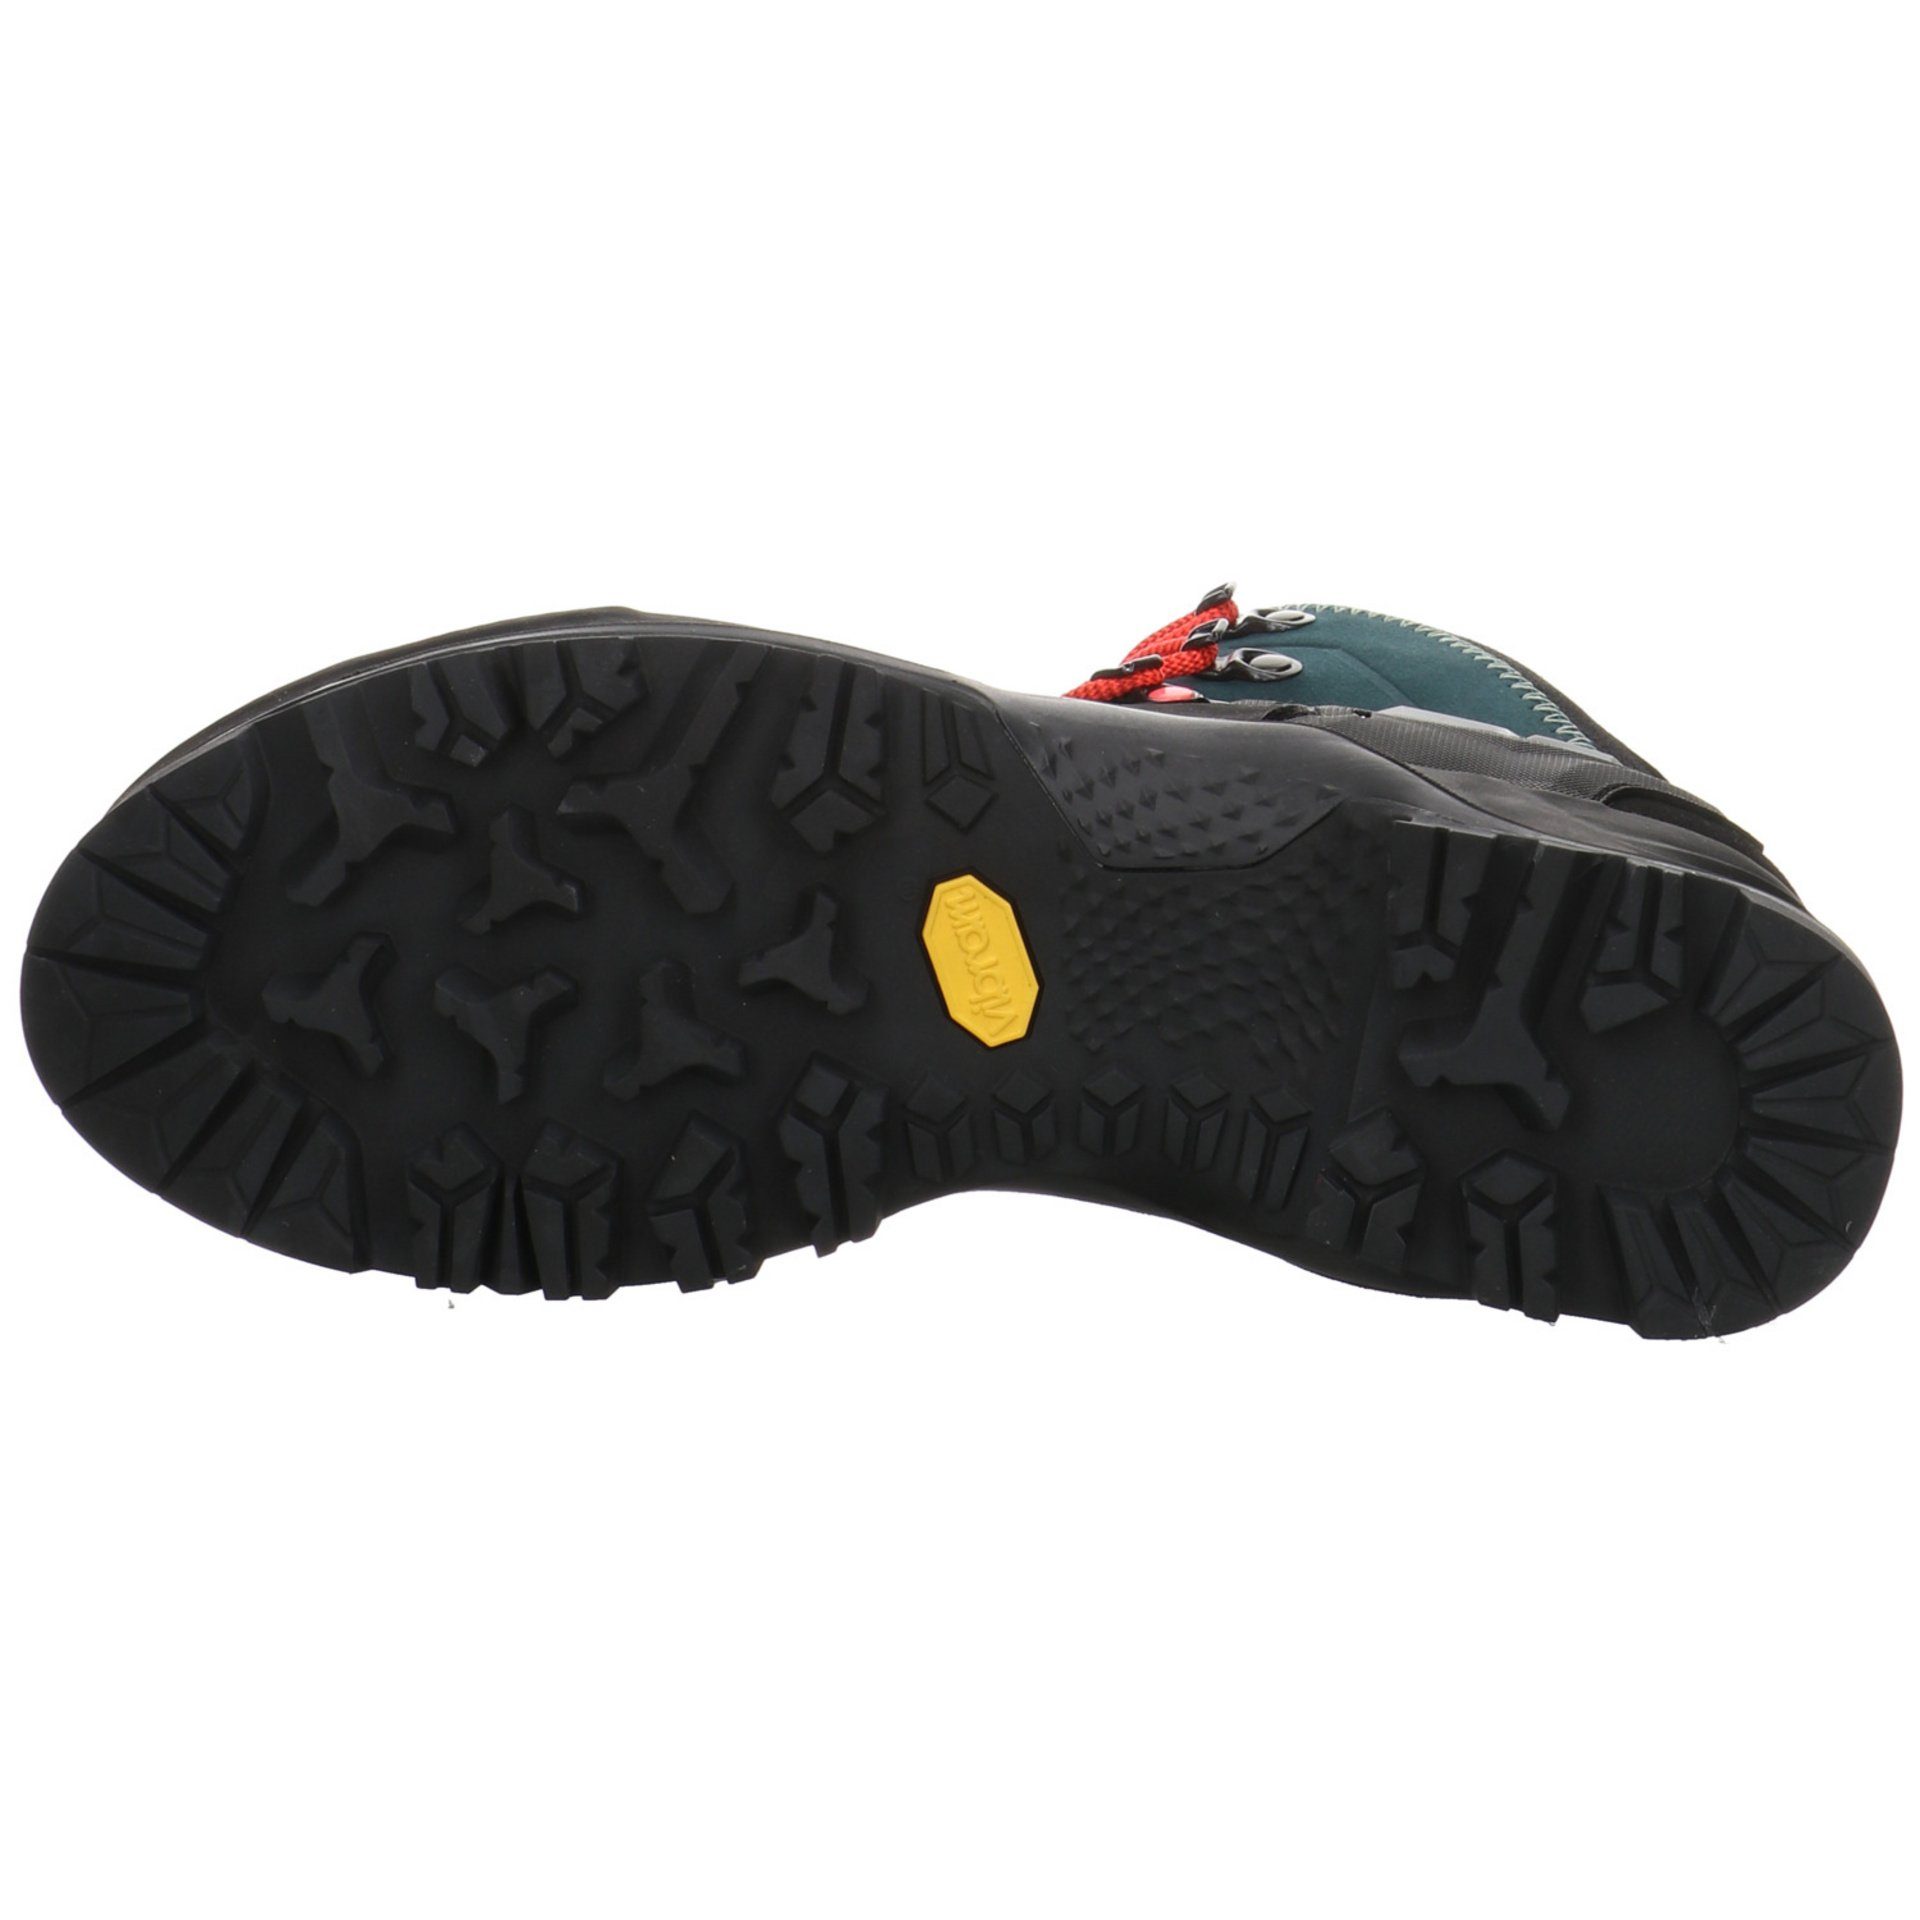 GTX Damen dunkelblau (295) Mid Schuhe Trainer Leder-/Textilkombination Salewa Outdoorschuh Outdoor Mountain